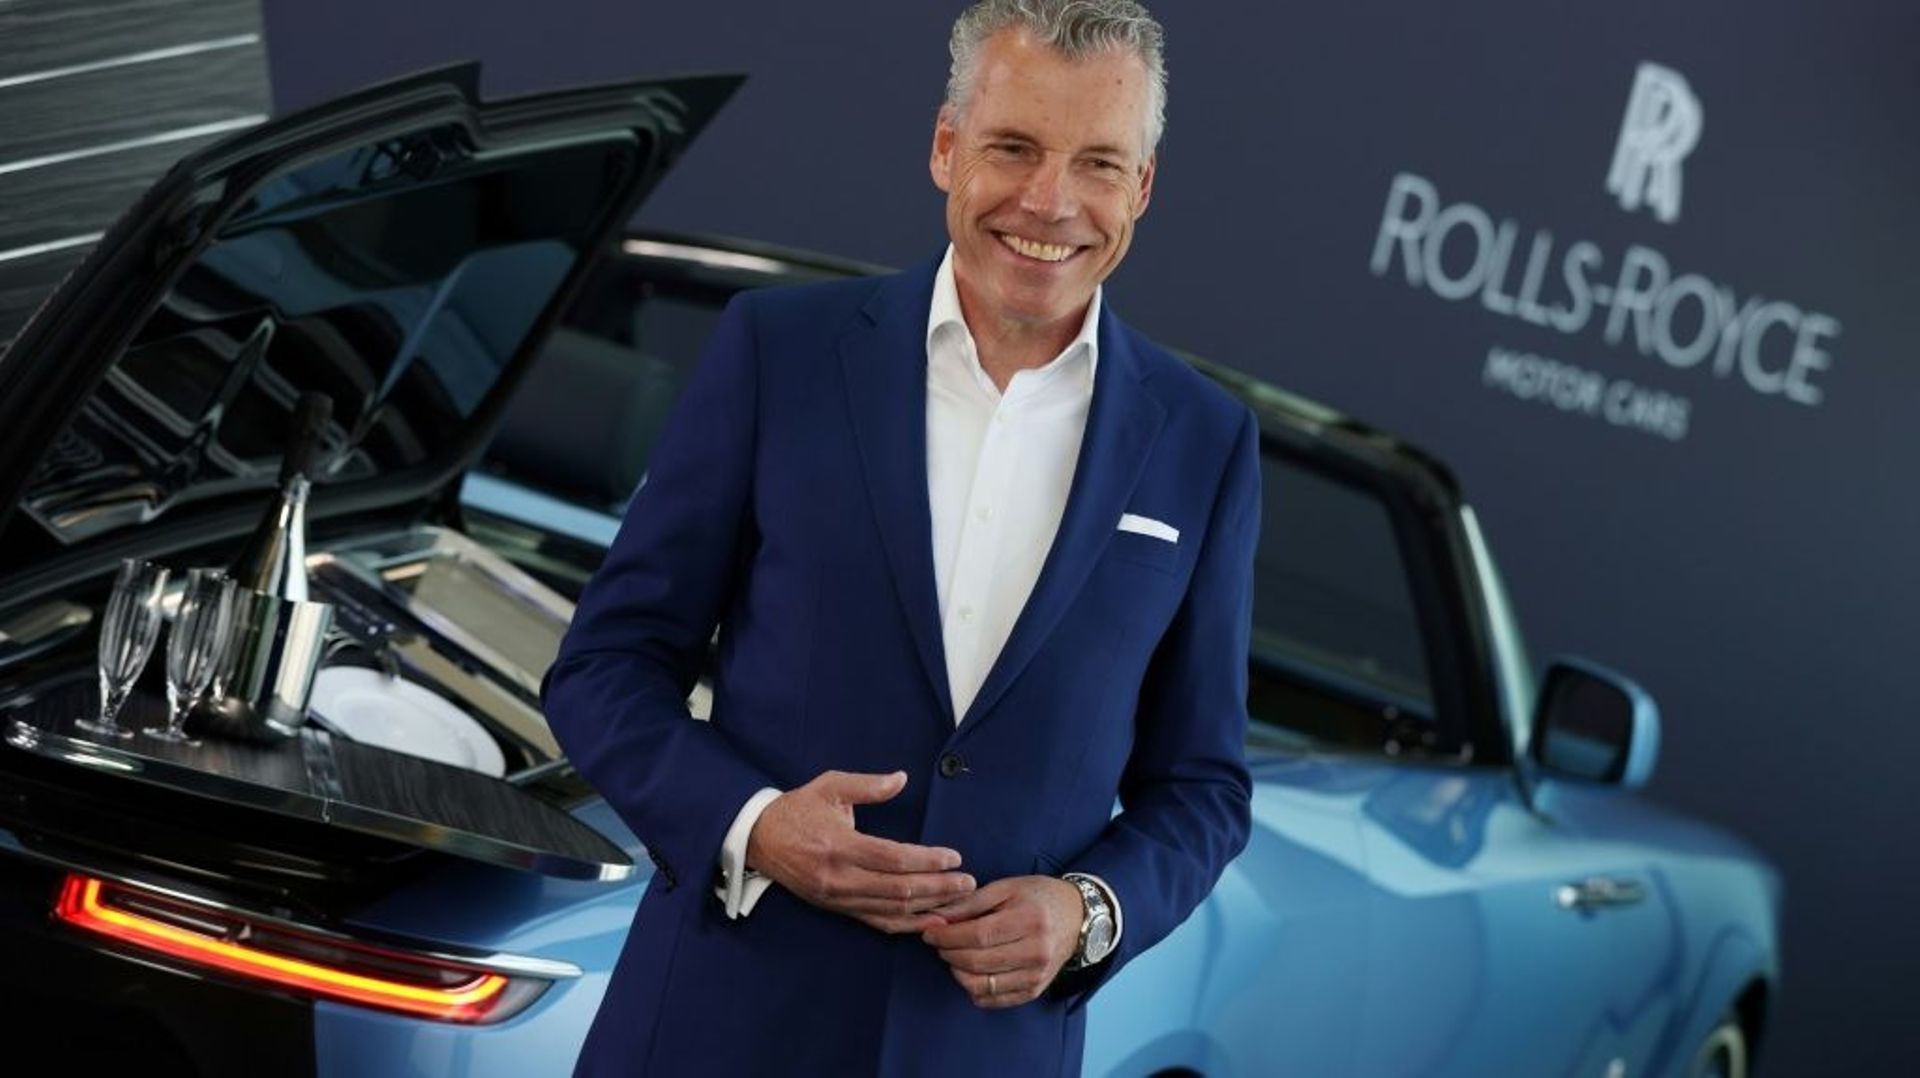 Le PDG de Rolls-Royce Torsten Muller-Otvos à Chichester dans le sud-ouest de l’Angleterre le 27 mai 2021